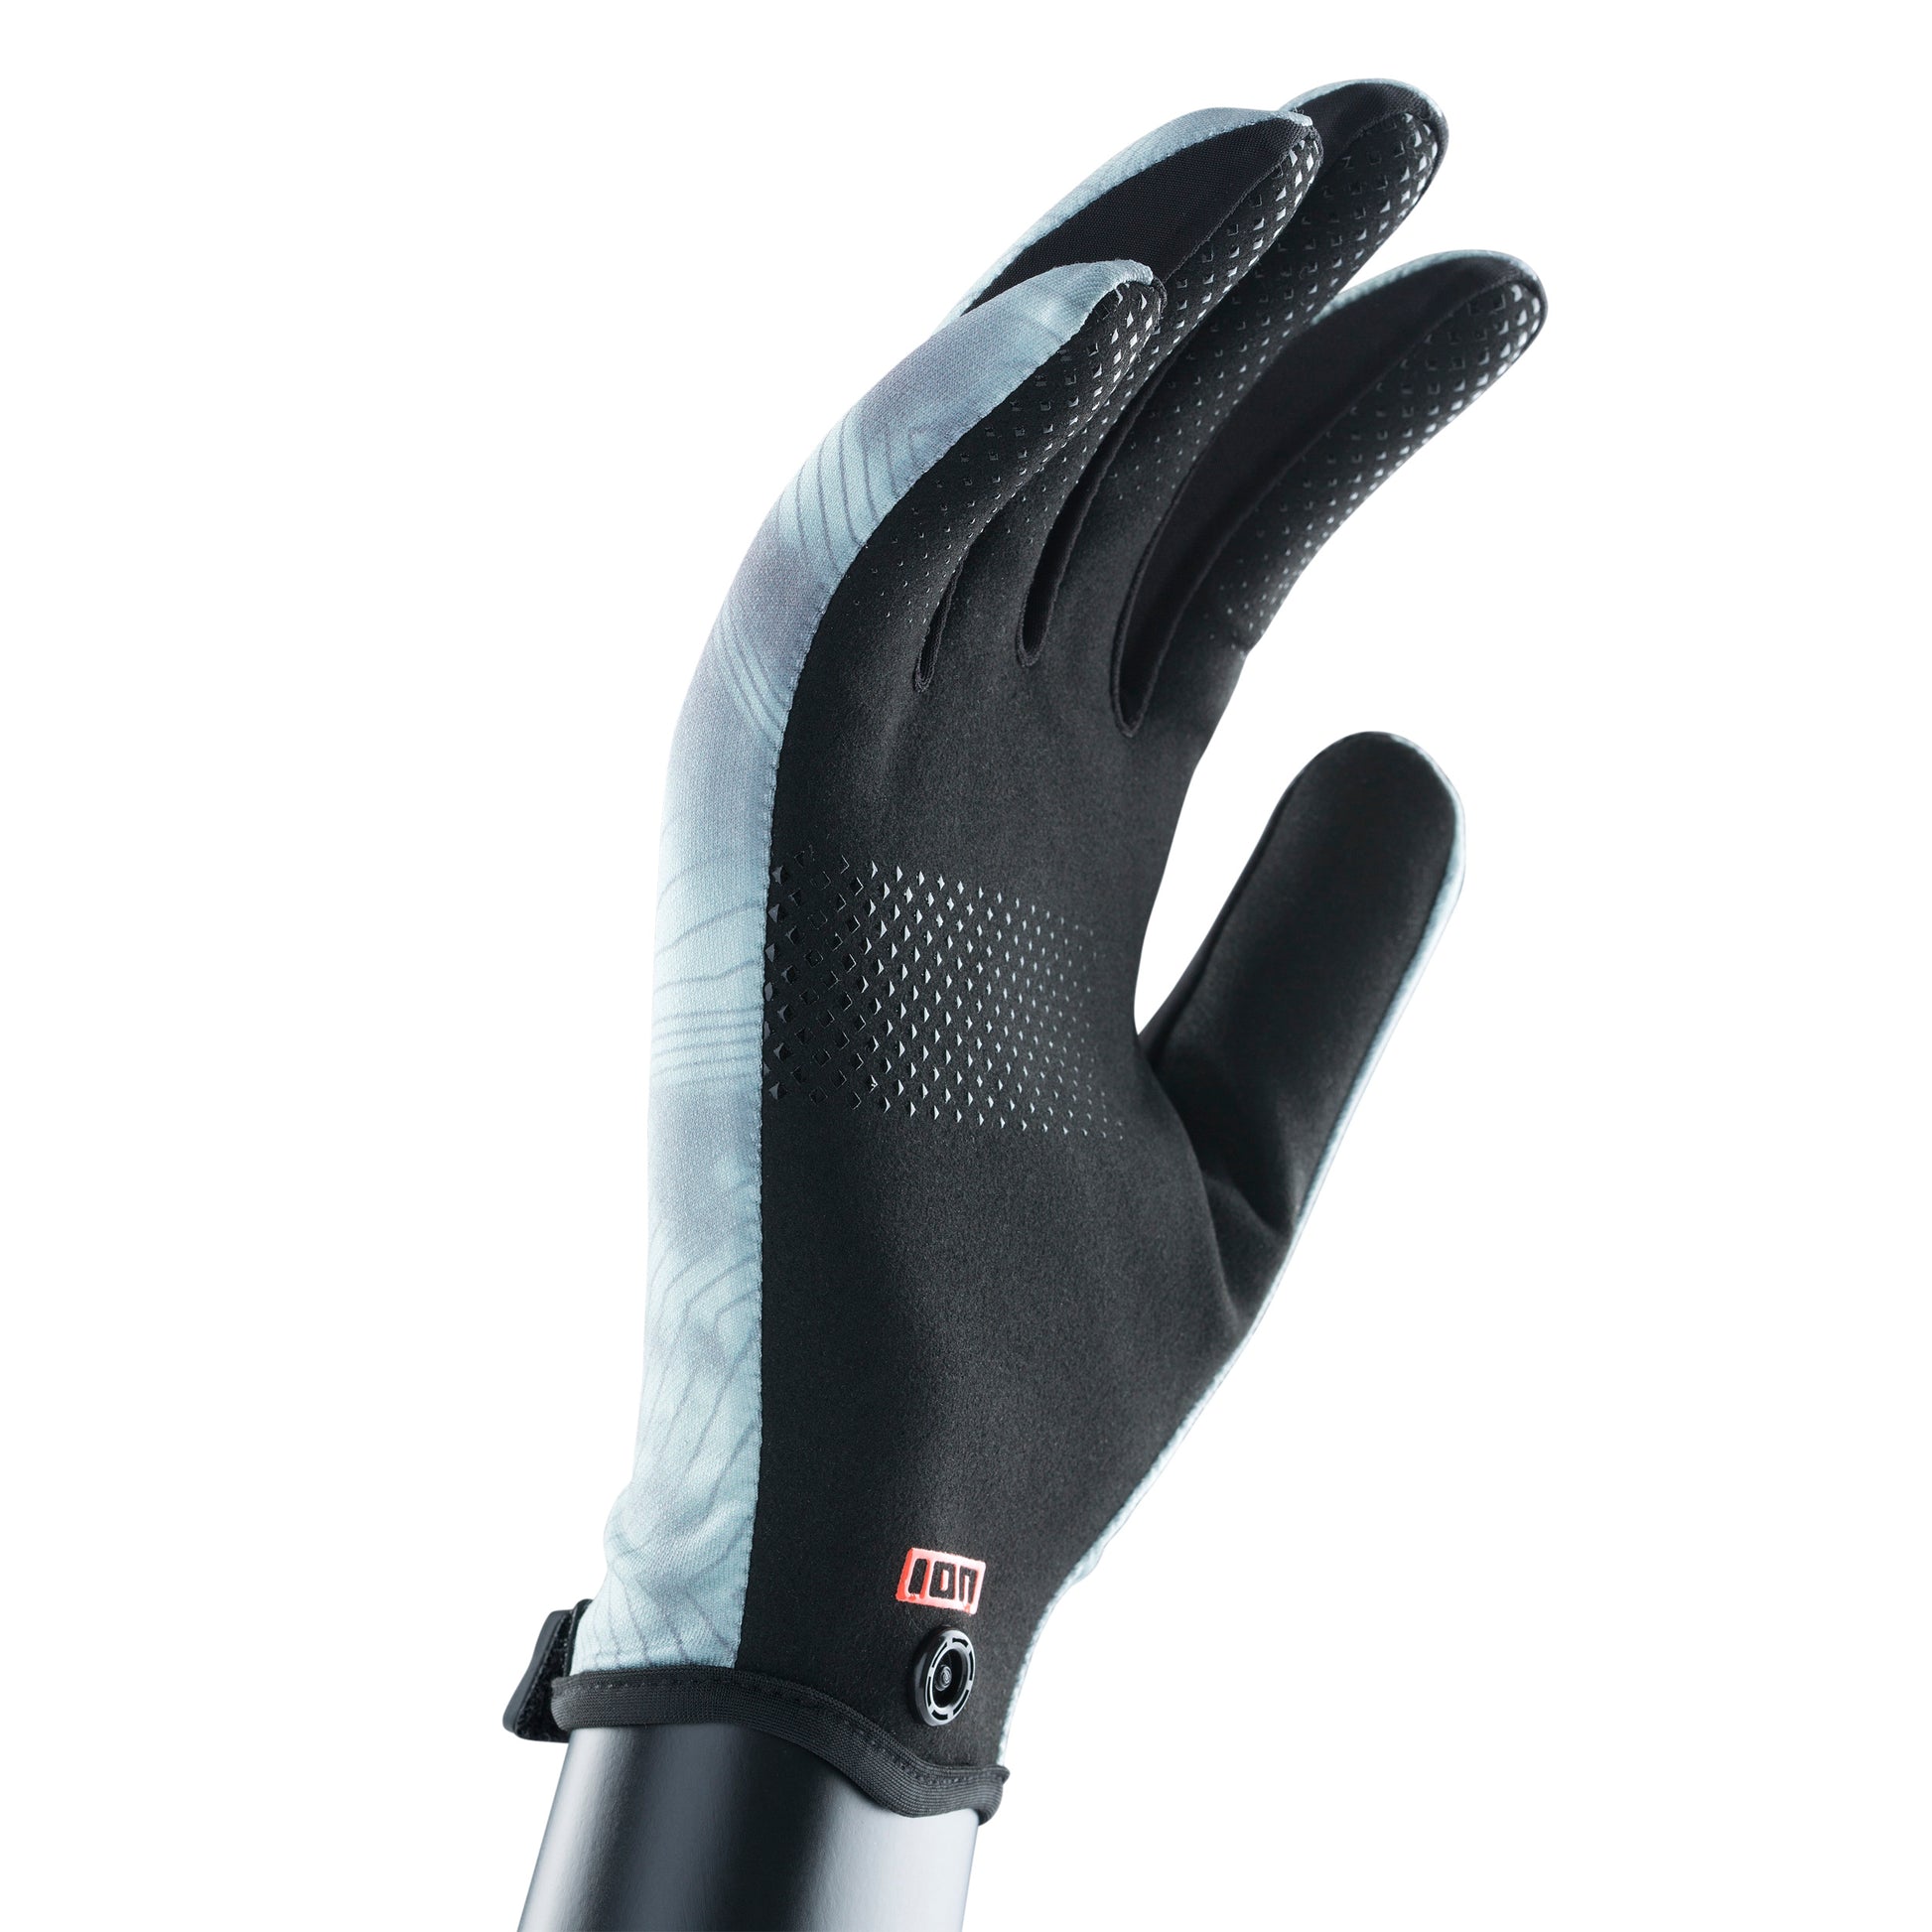 ION Water Gloves Amara Full Finger unisex – Neopren Handschuhe